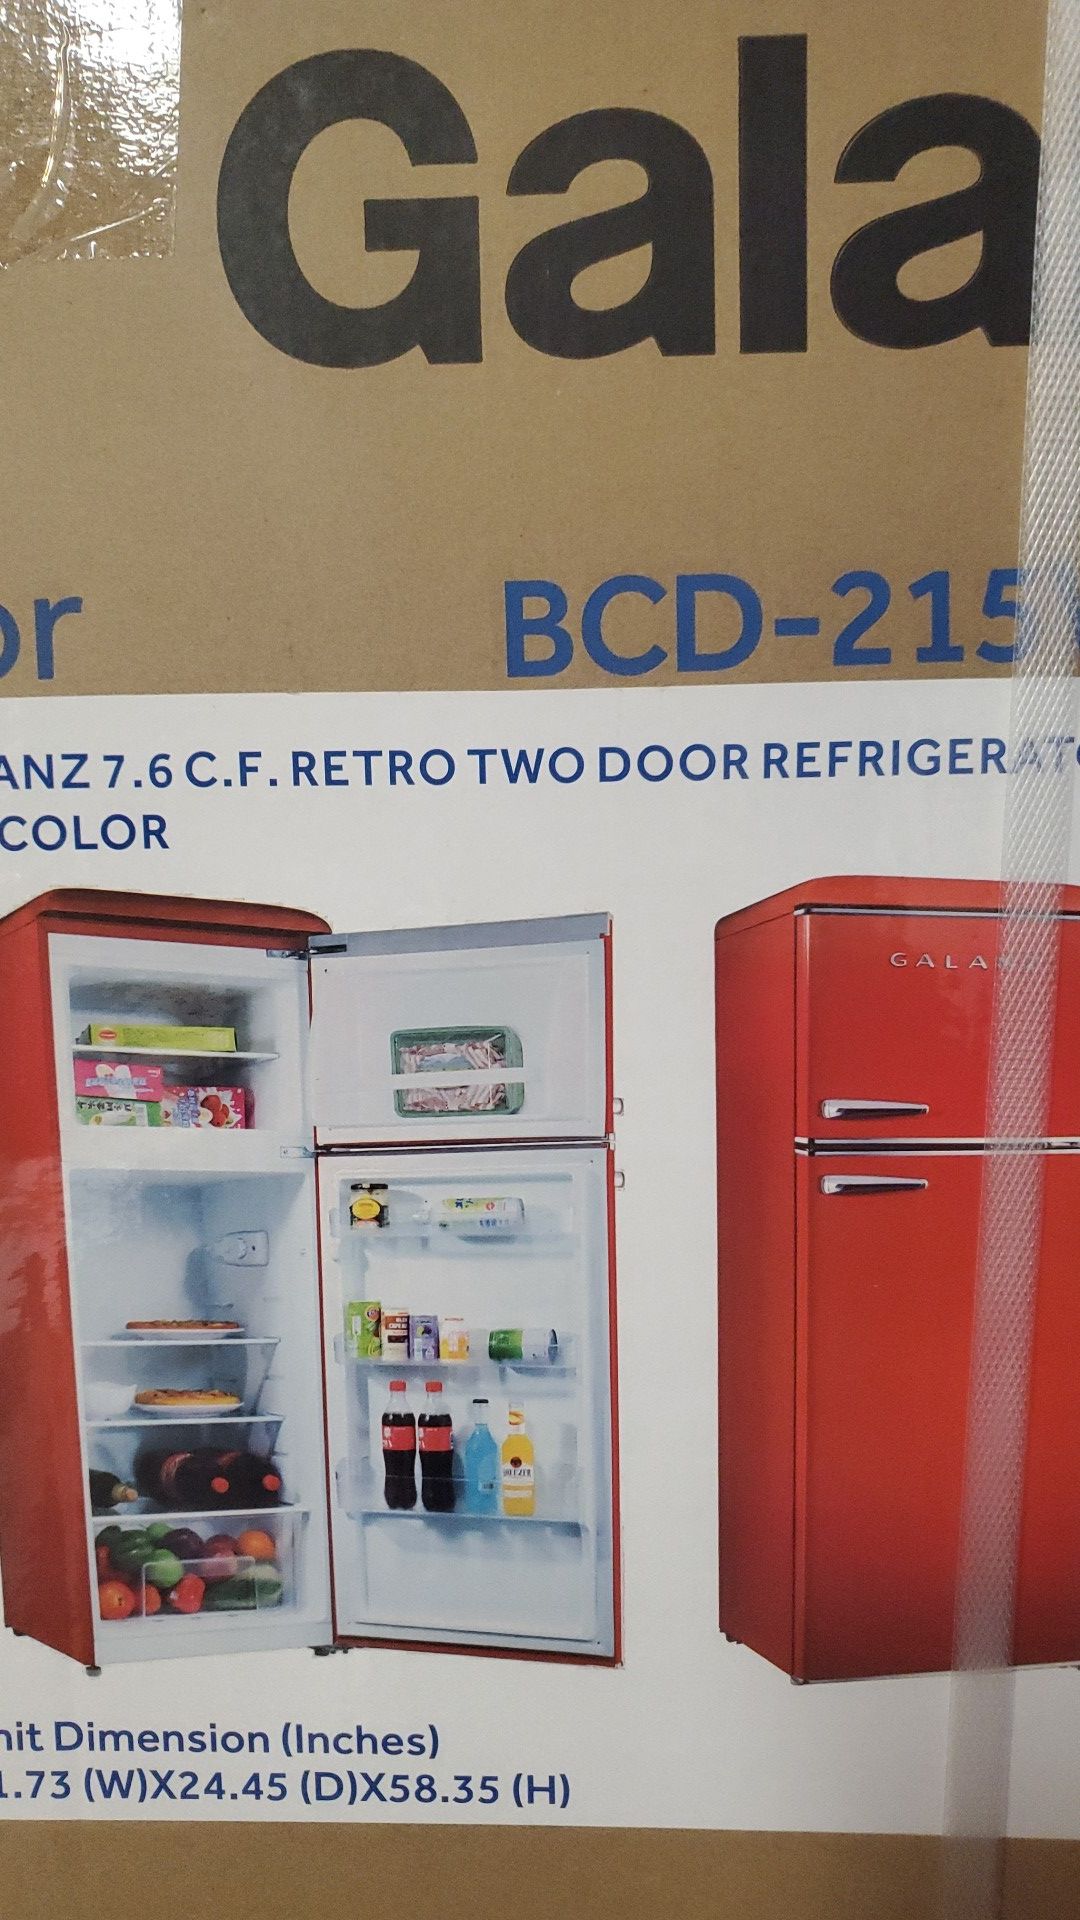 Refrigerator Galanz 7.6 C.F Retro two door